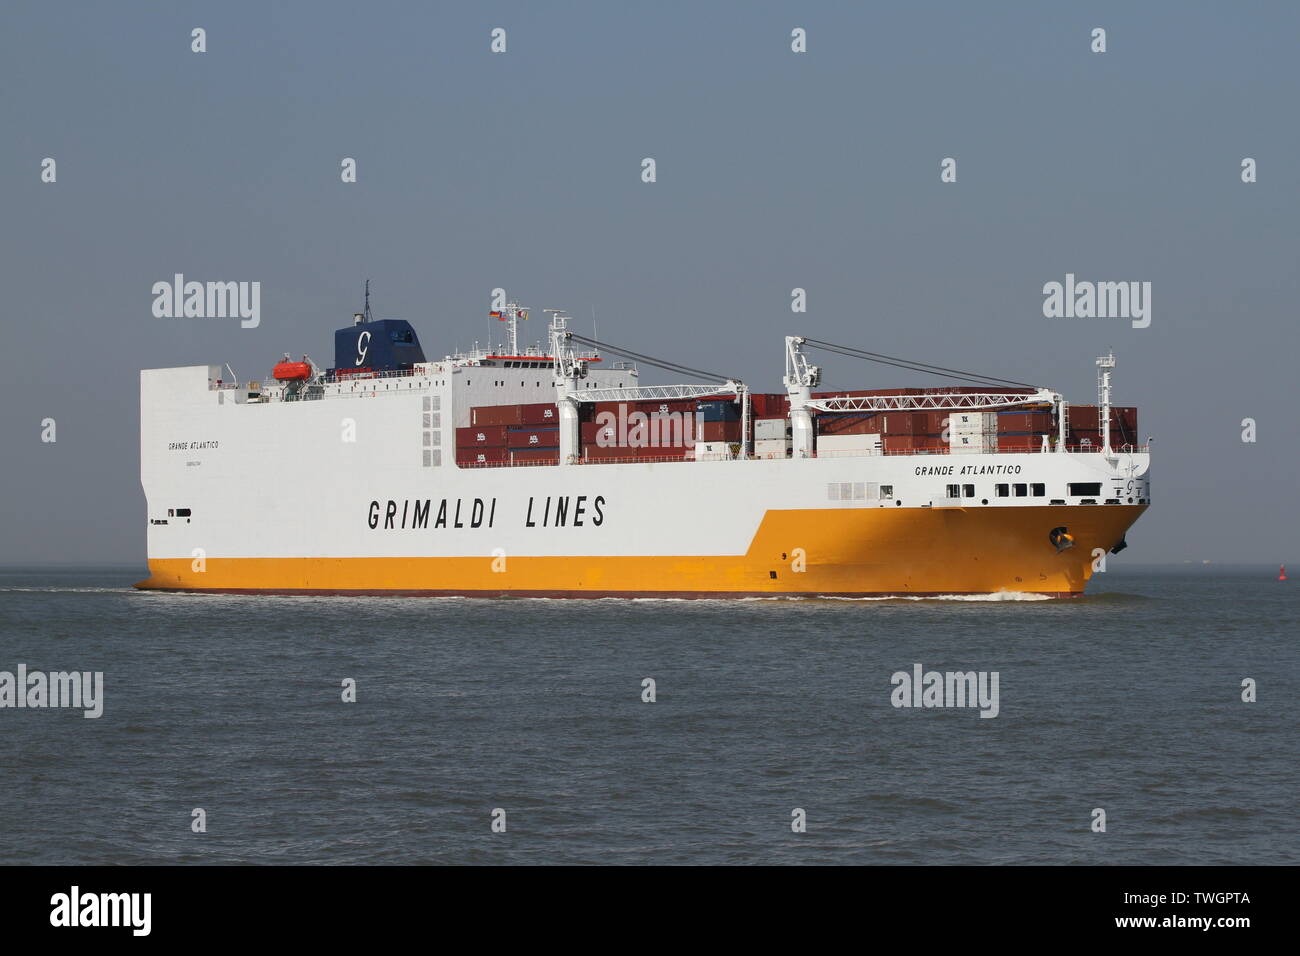 Il Ro-Ro cargo Grande Atlantico passe le 18 avril 2019 le port de Cuxhaven. Banque D'Images